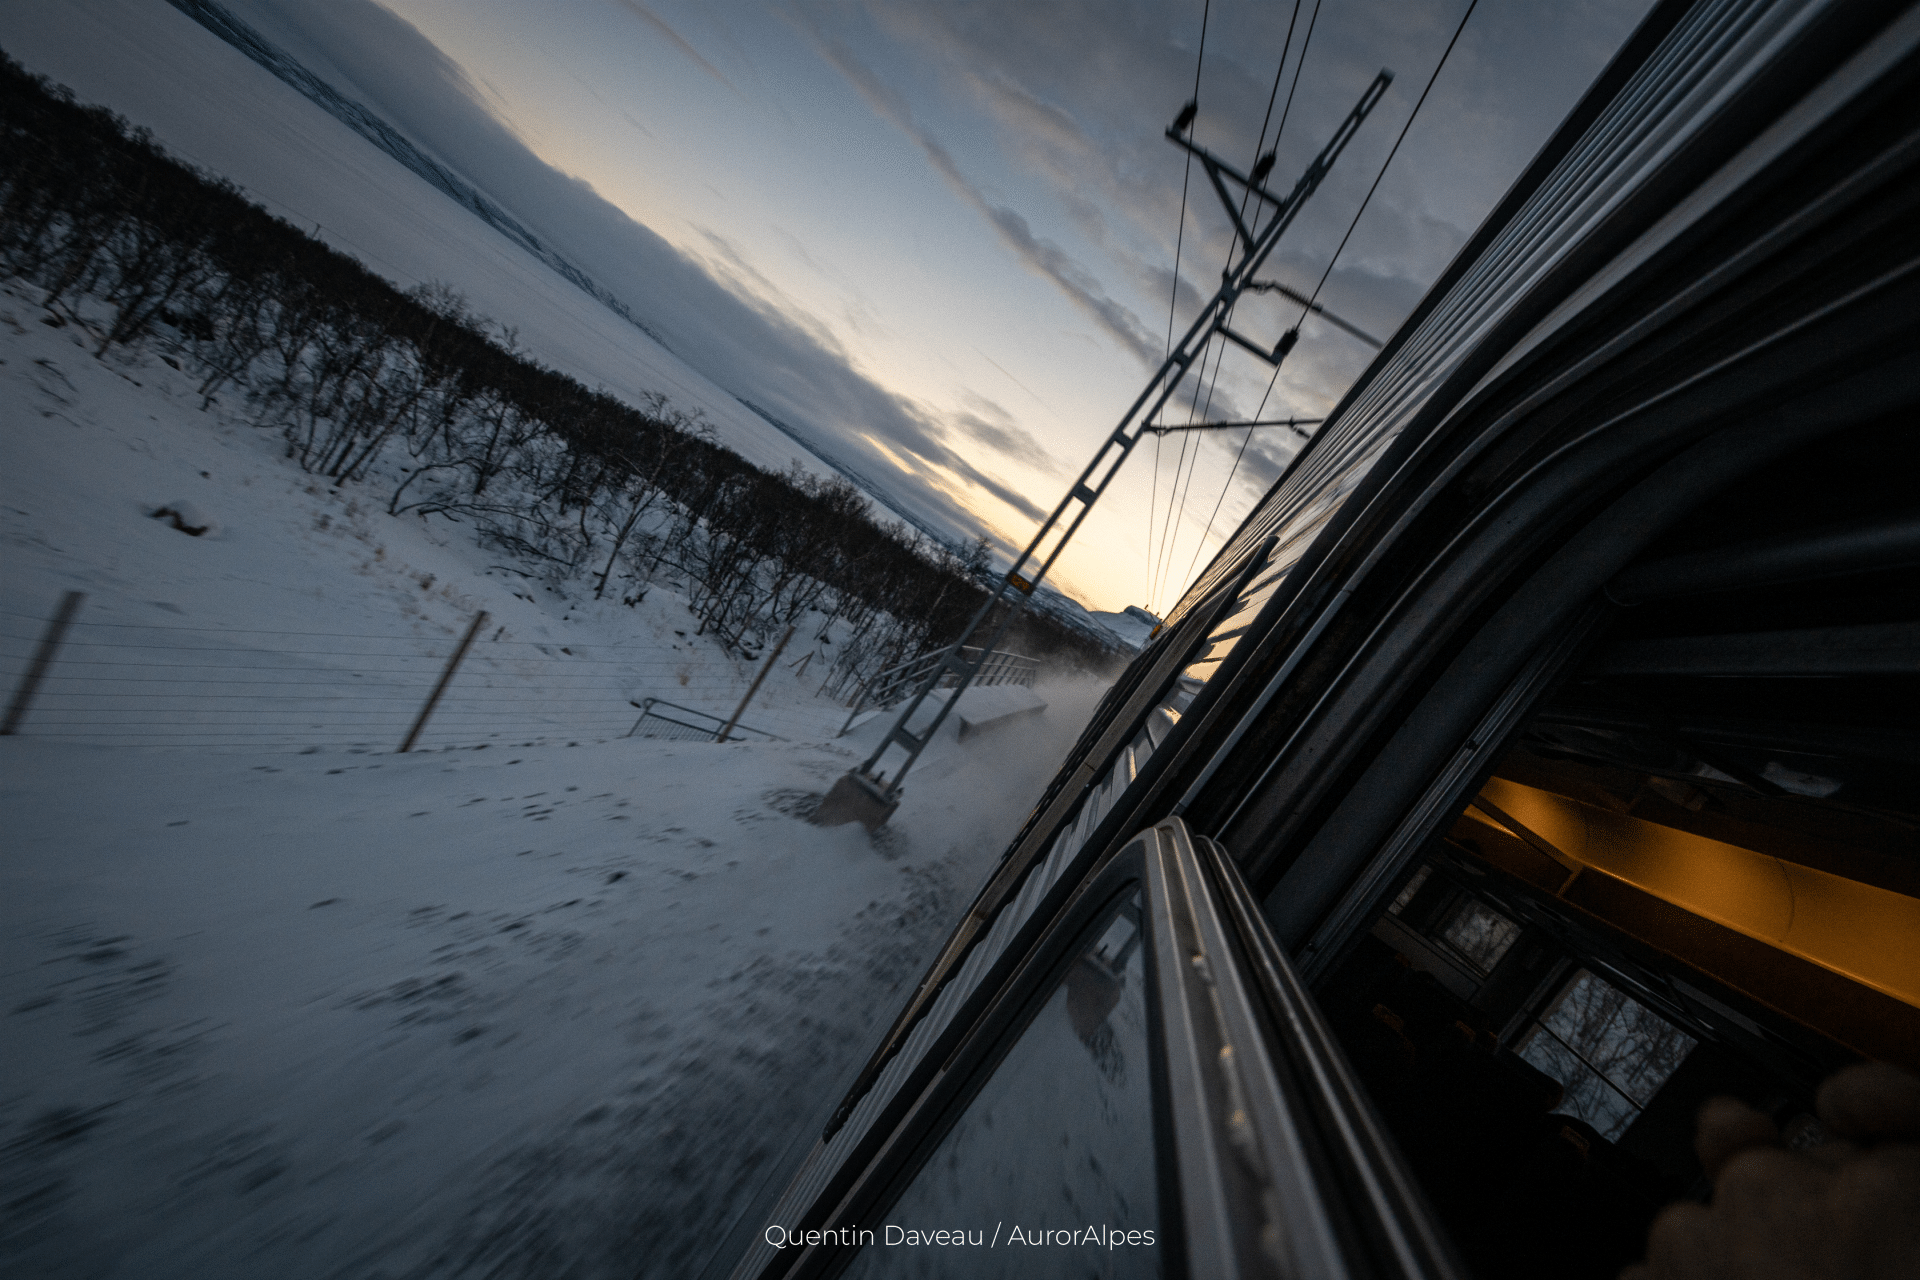 Vue depuis le train de nuit reliant Stockholm (Suède) à Narvik (Norvège). L'appareil photo est sorti en dehors du train, qui avance à vive allure. Au loin, le Soleil se lève sur un lac gelé.